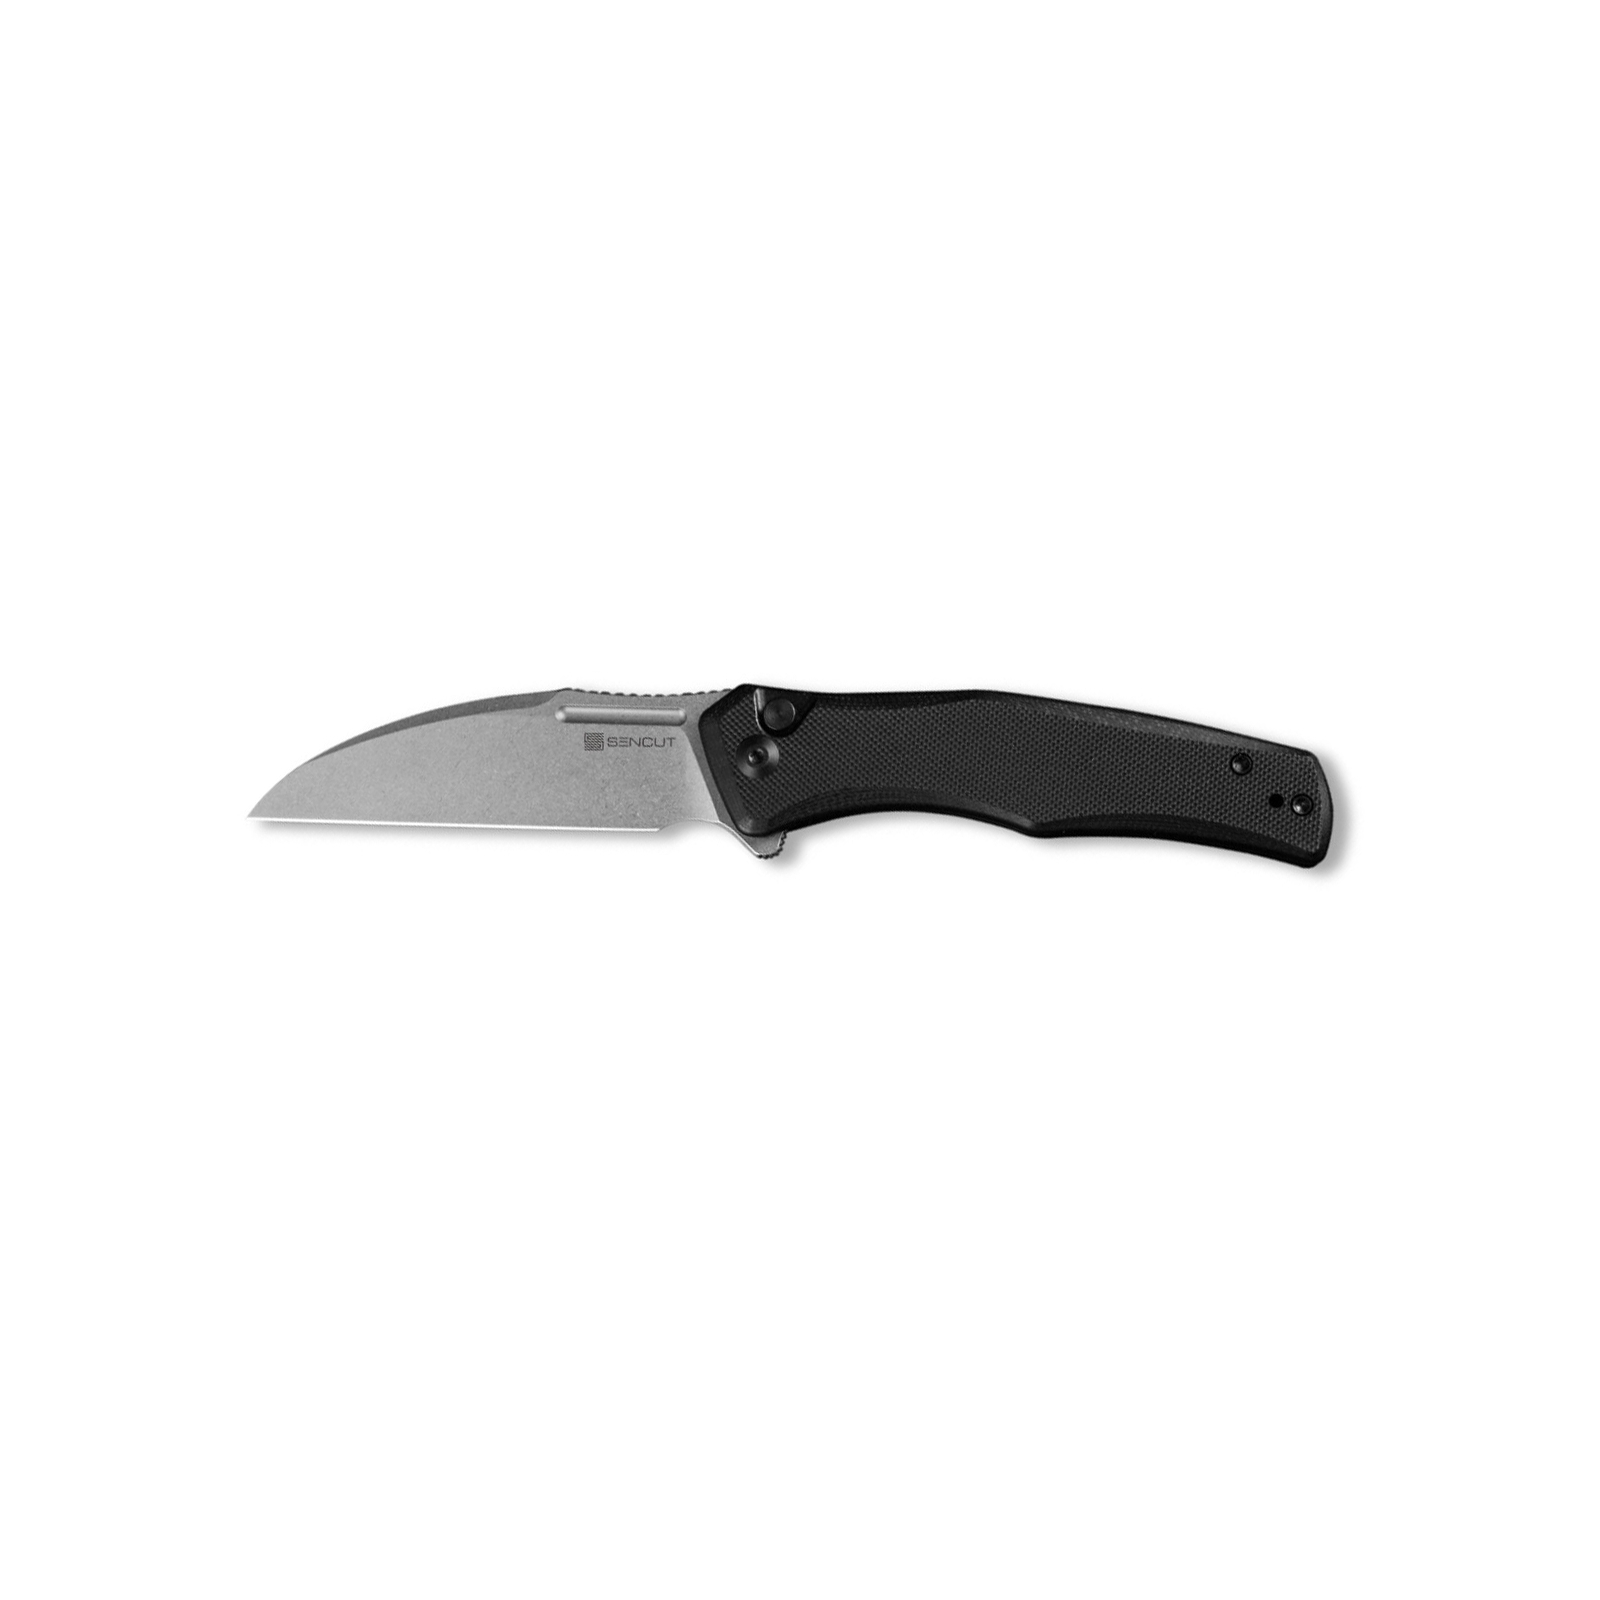 Нож Sencut Watauga Blackwash Green Micarta (S21011-2)